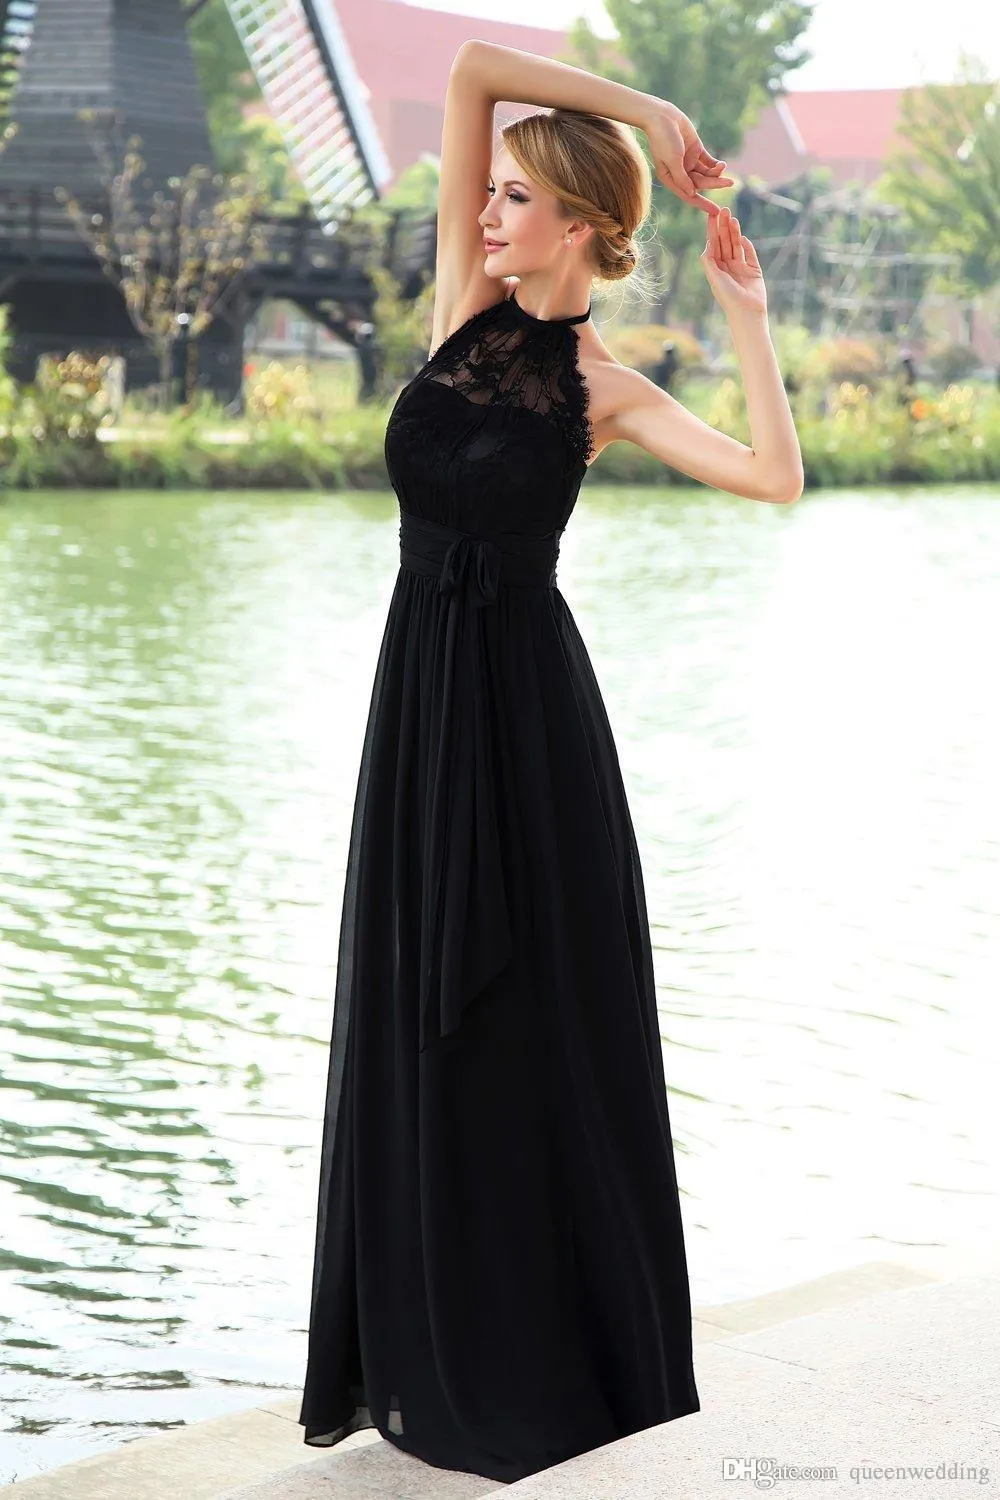 Exquisite schwarze 2019 Prom Kleider Lace Top Chiffon Rock mit Schleife Sash Halter lange formale Abendgesellschaft Gown Noche